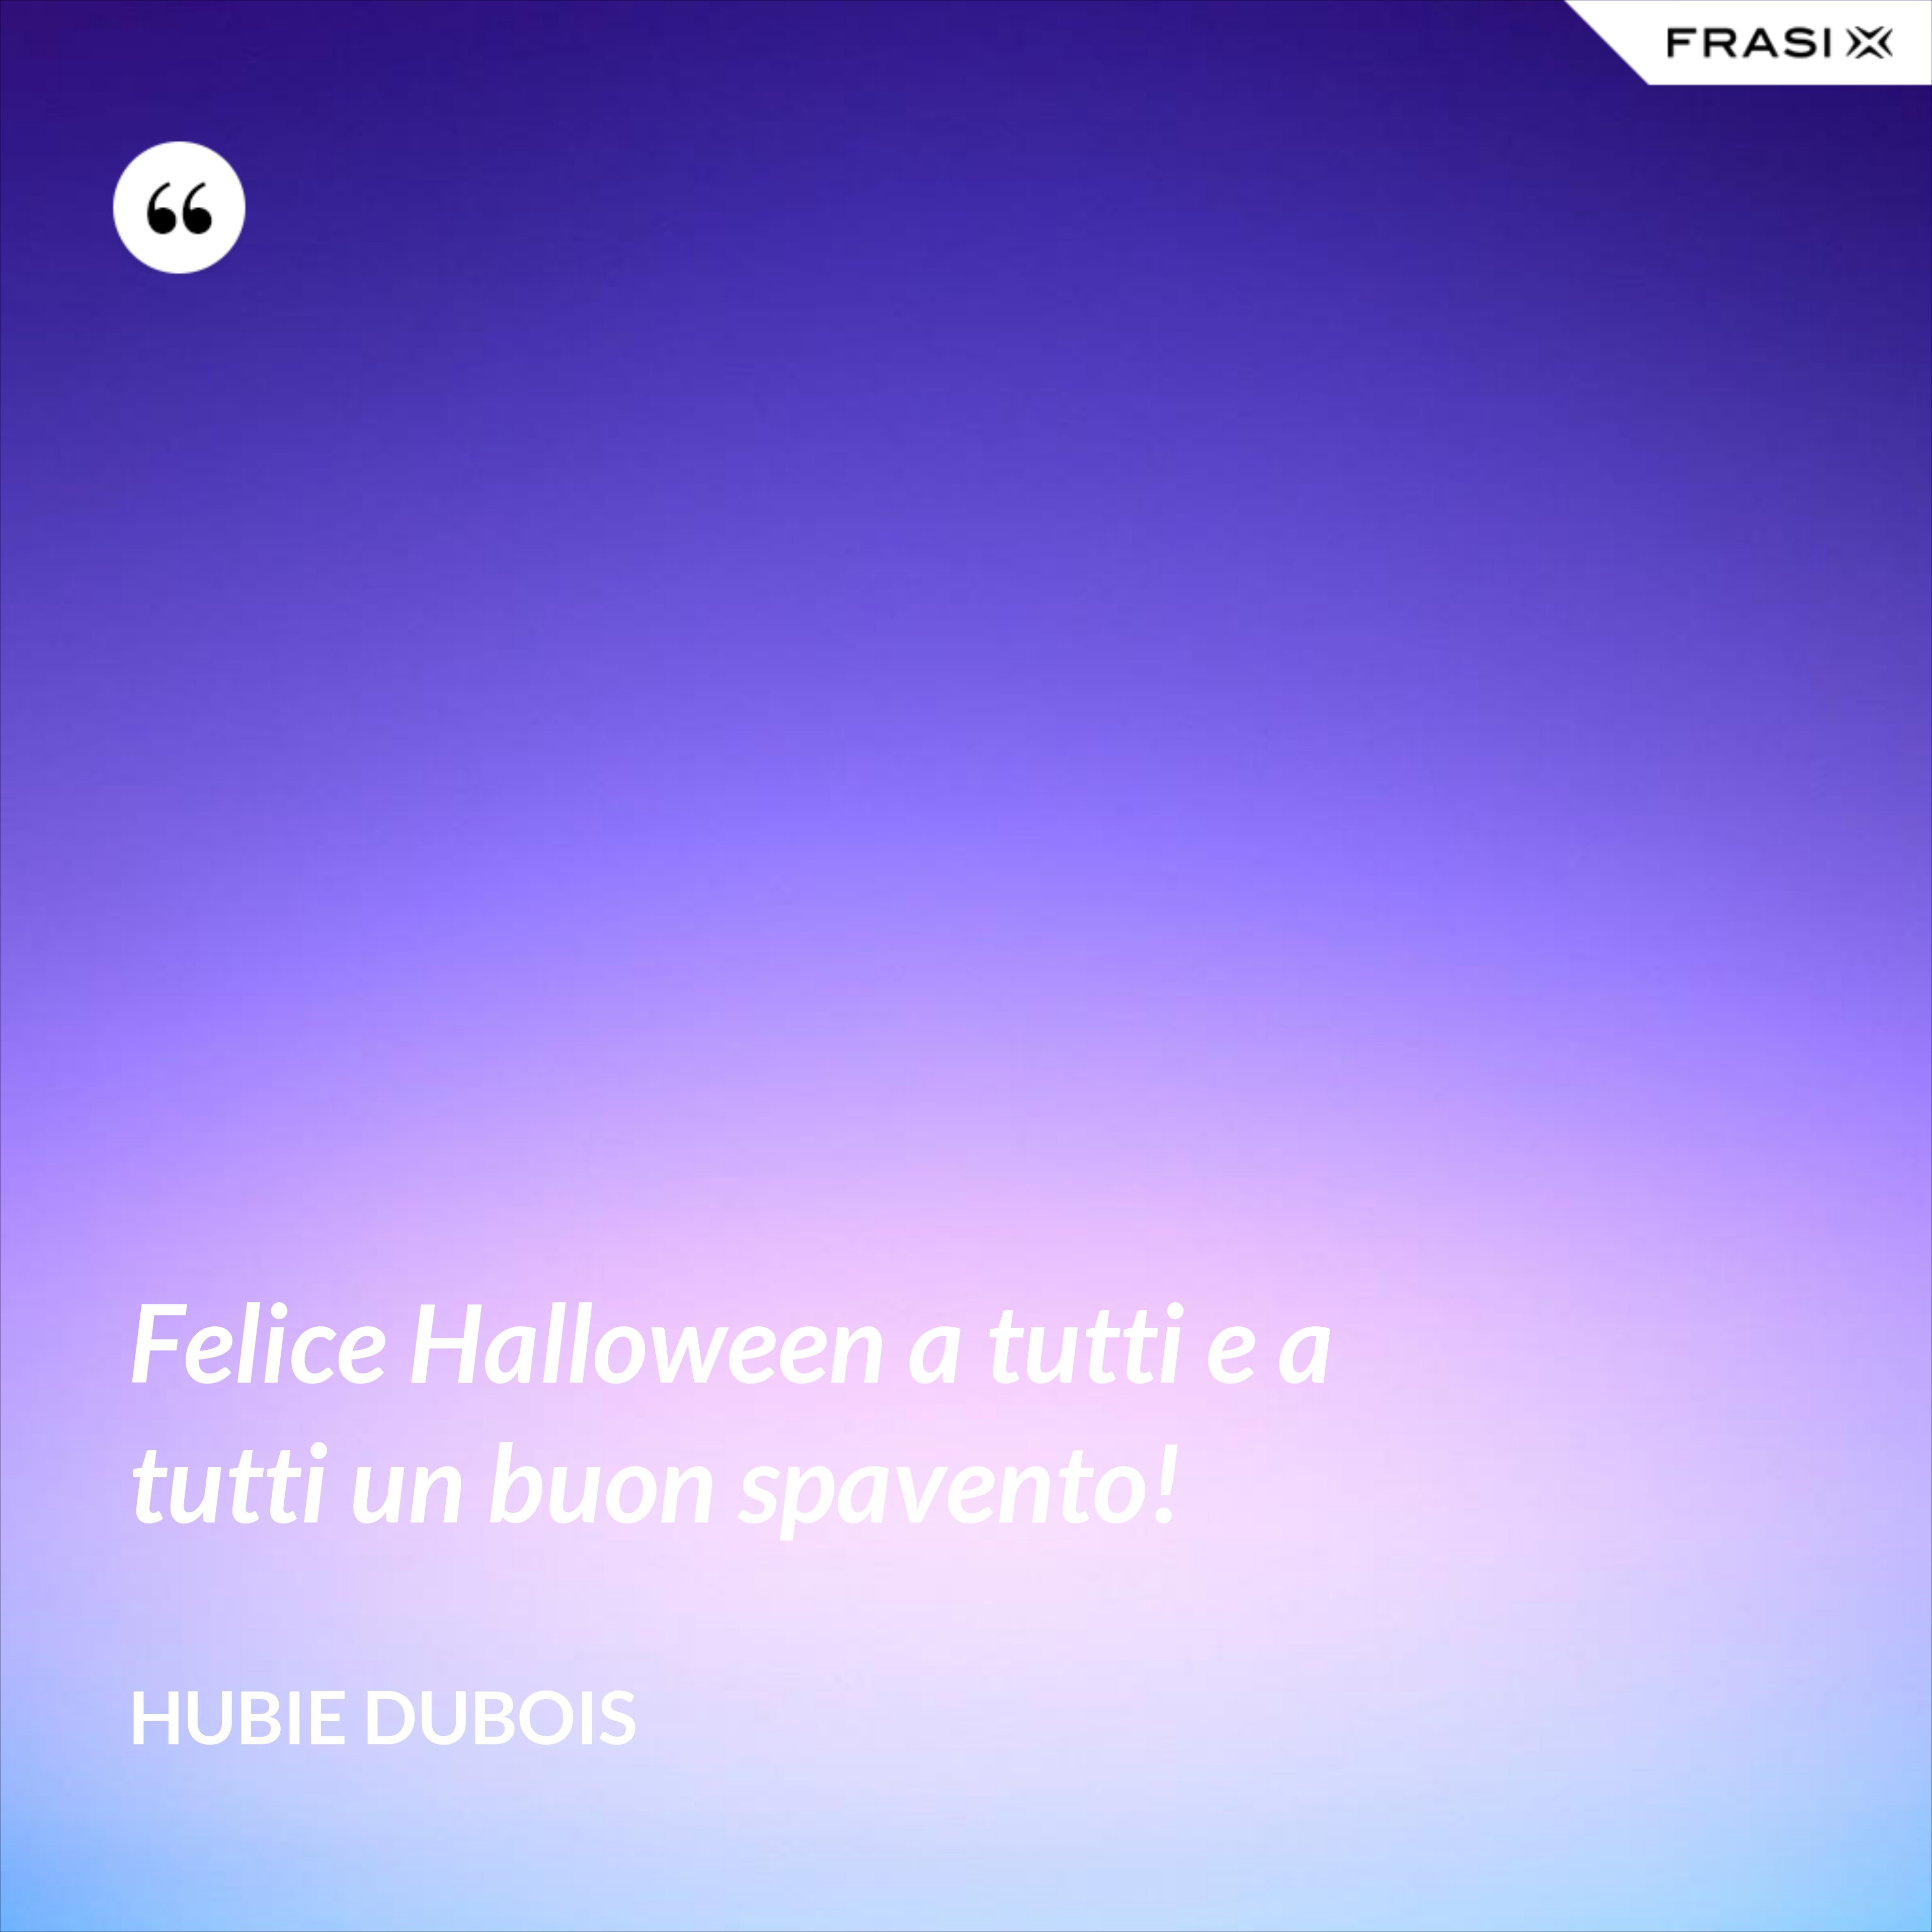 Felice Halloween a tutti e a tutti un buon spavento! - Hubie Dubois